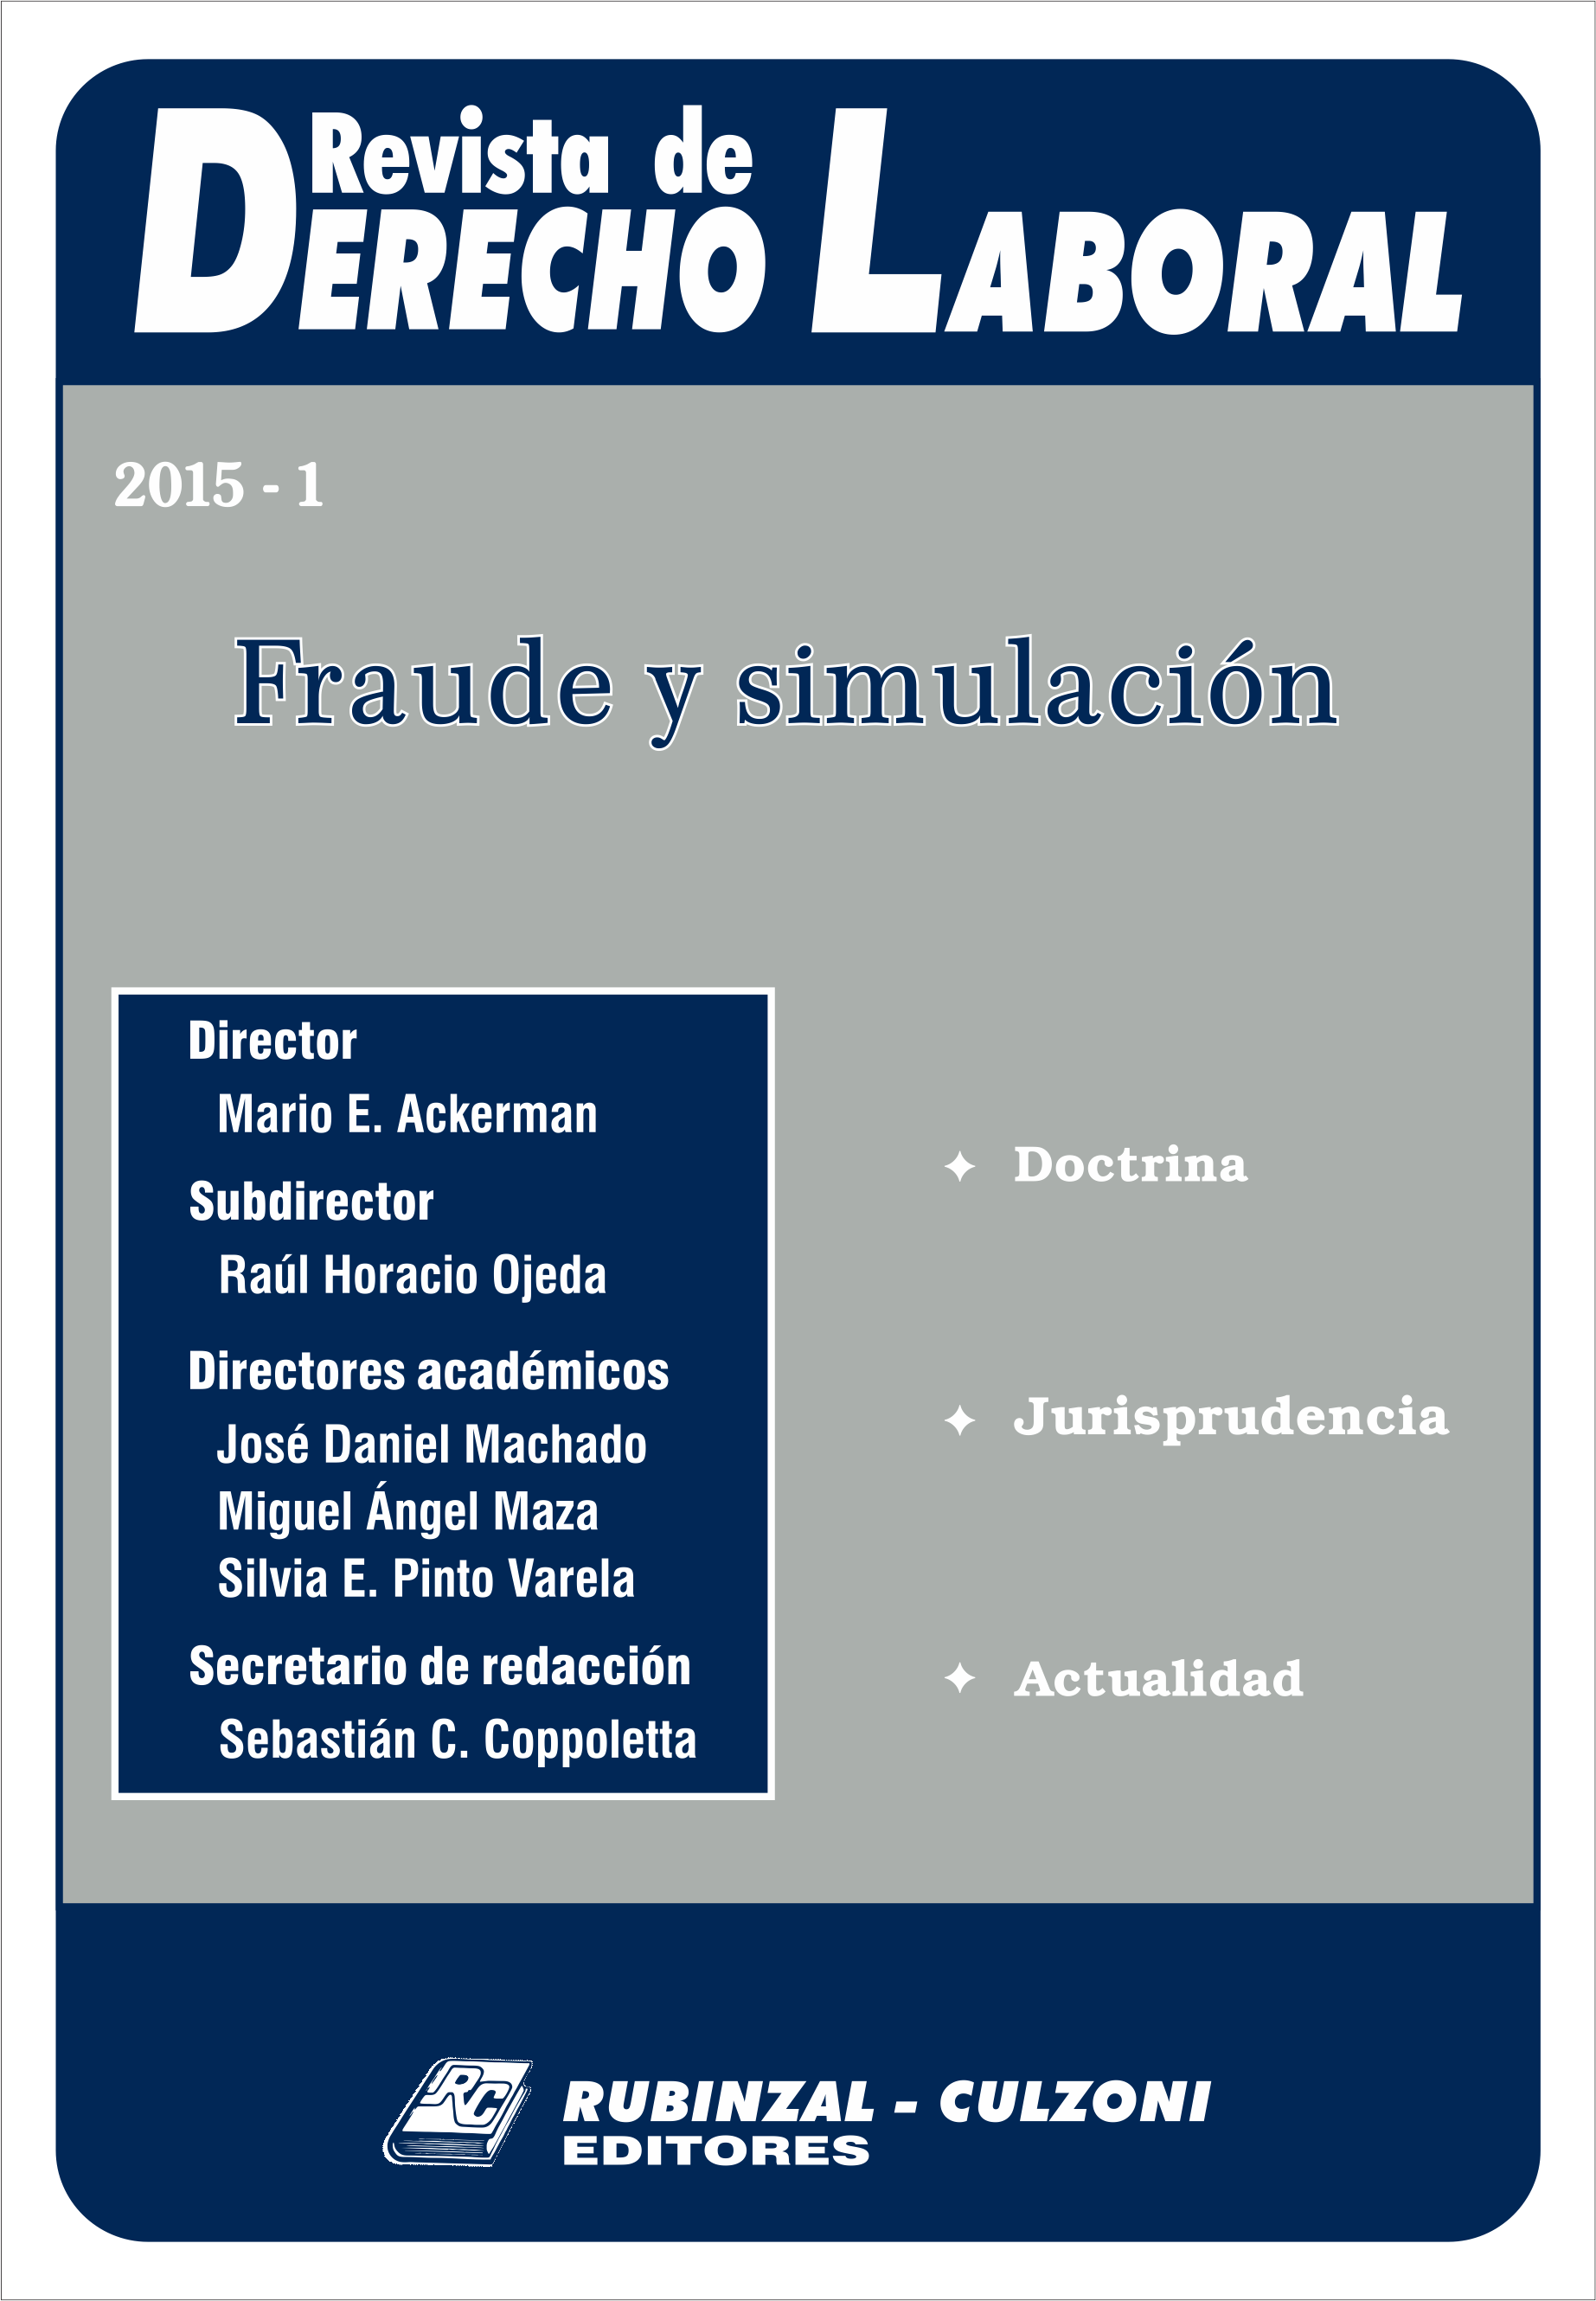 Revista de Derecho Laboral - Fraude y simulación